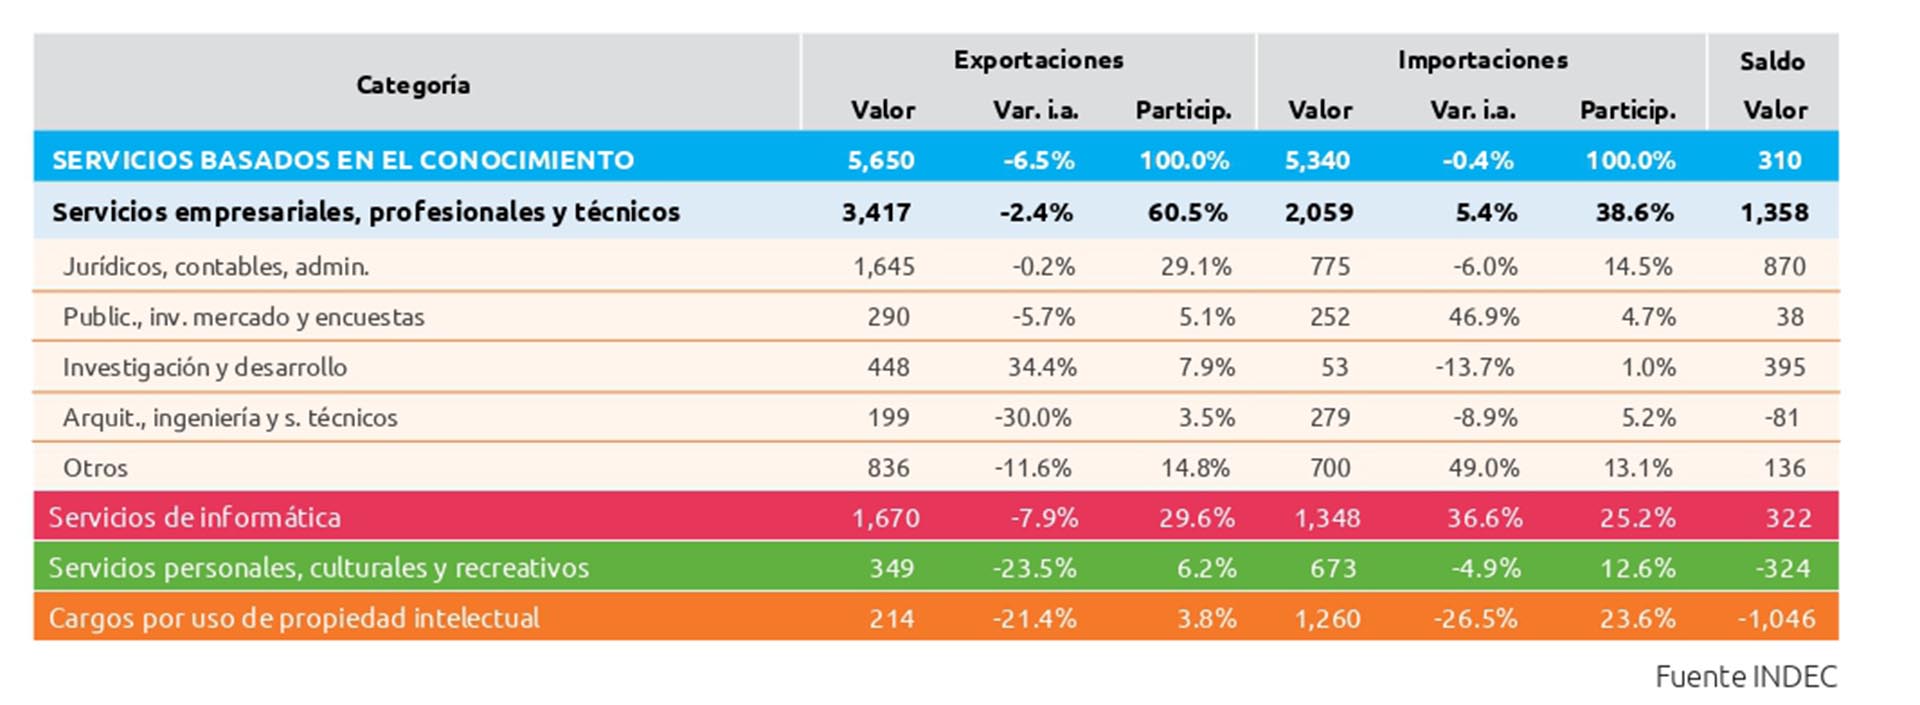 Los principales rubros de exportación de servicios de la Argentina